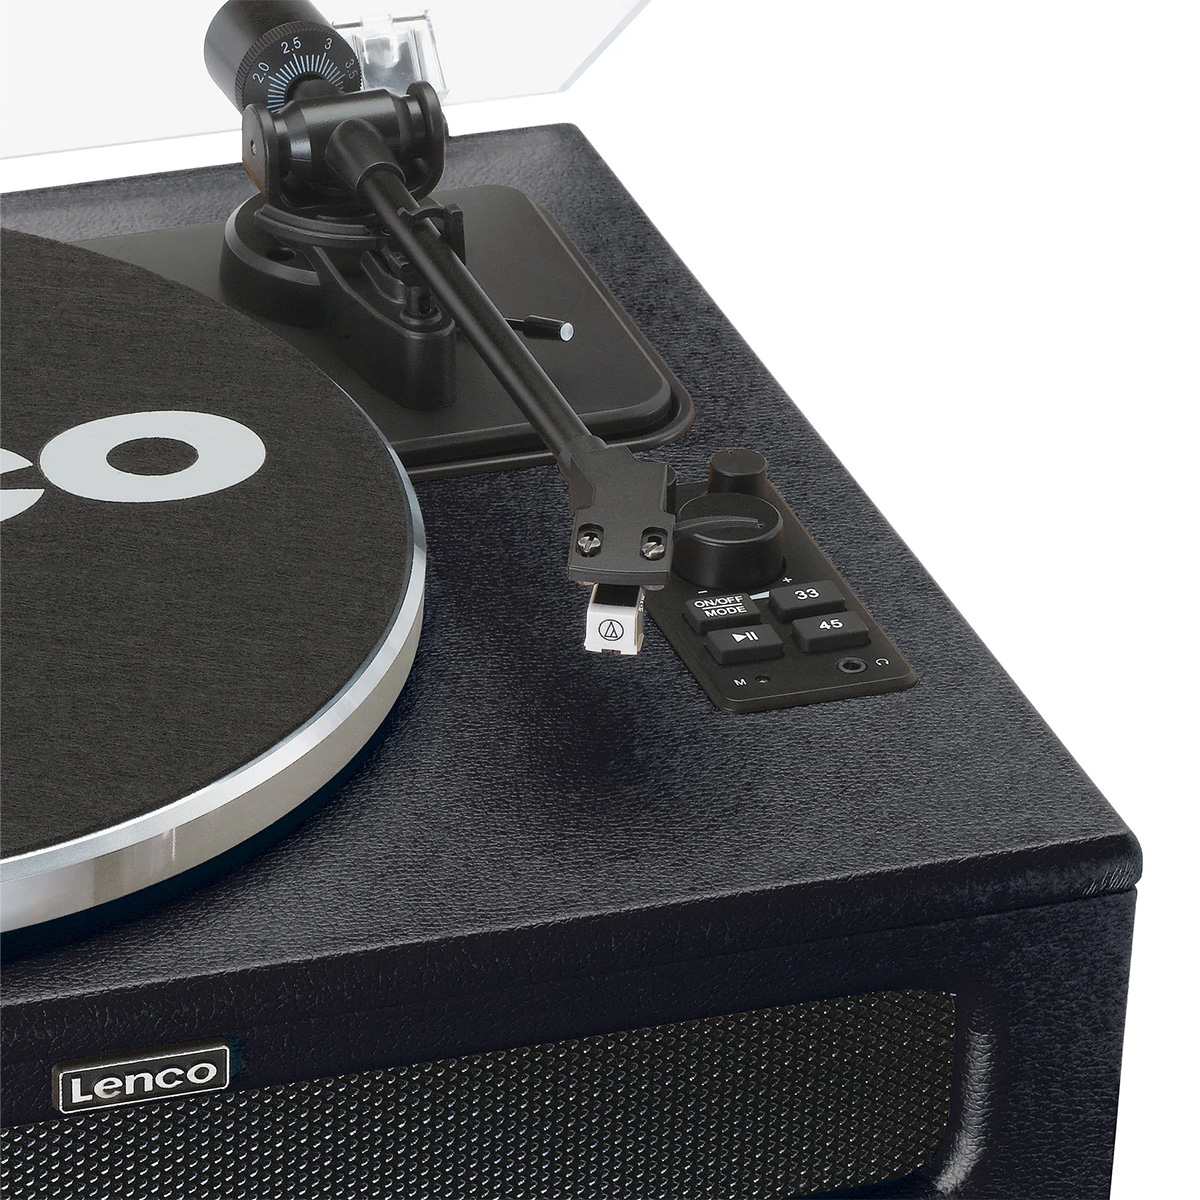 LENCO Lenco LS-430 Black Виниловый проигрыватель с 4 встроенными динамиками, Bluetooth и Tone & Pitch контролем